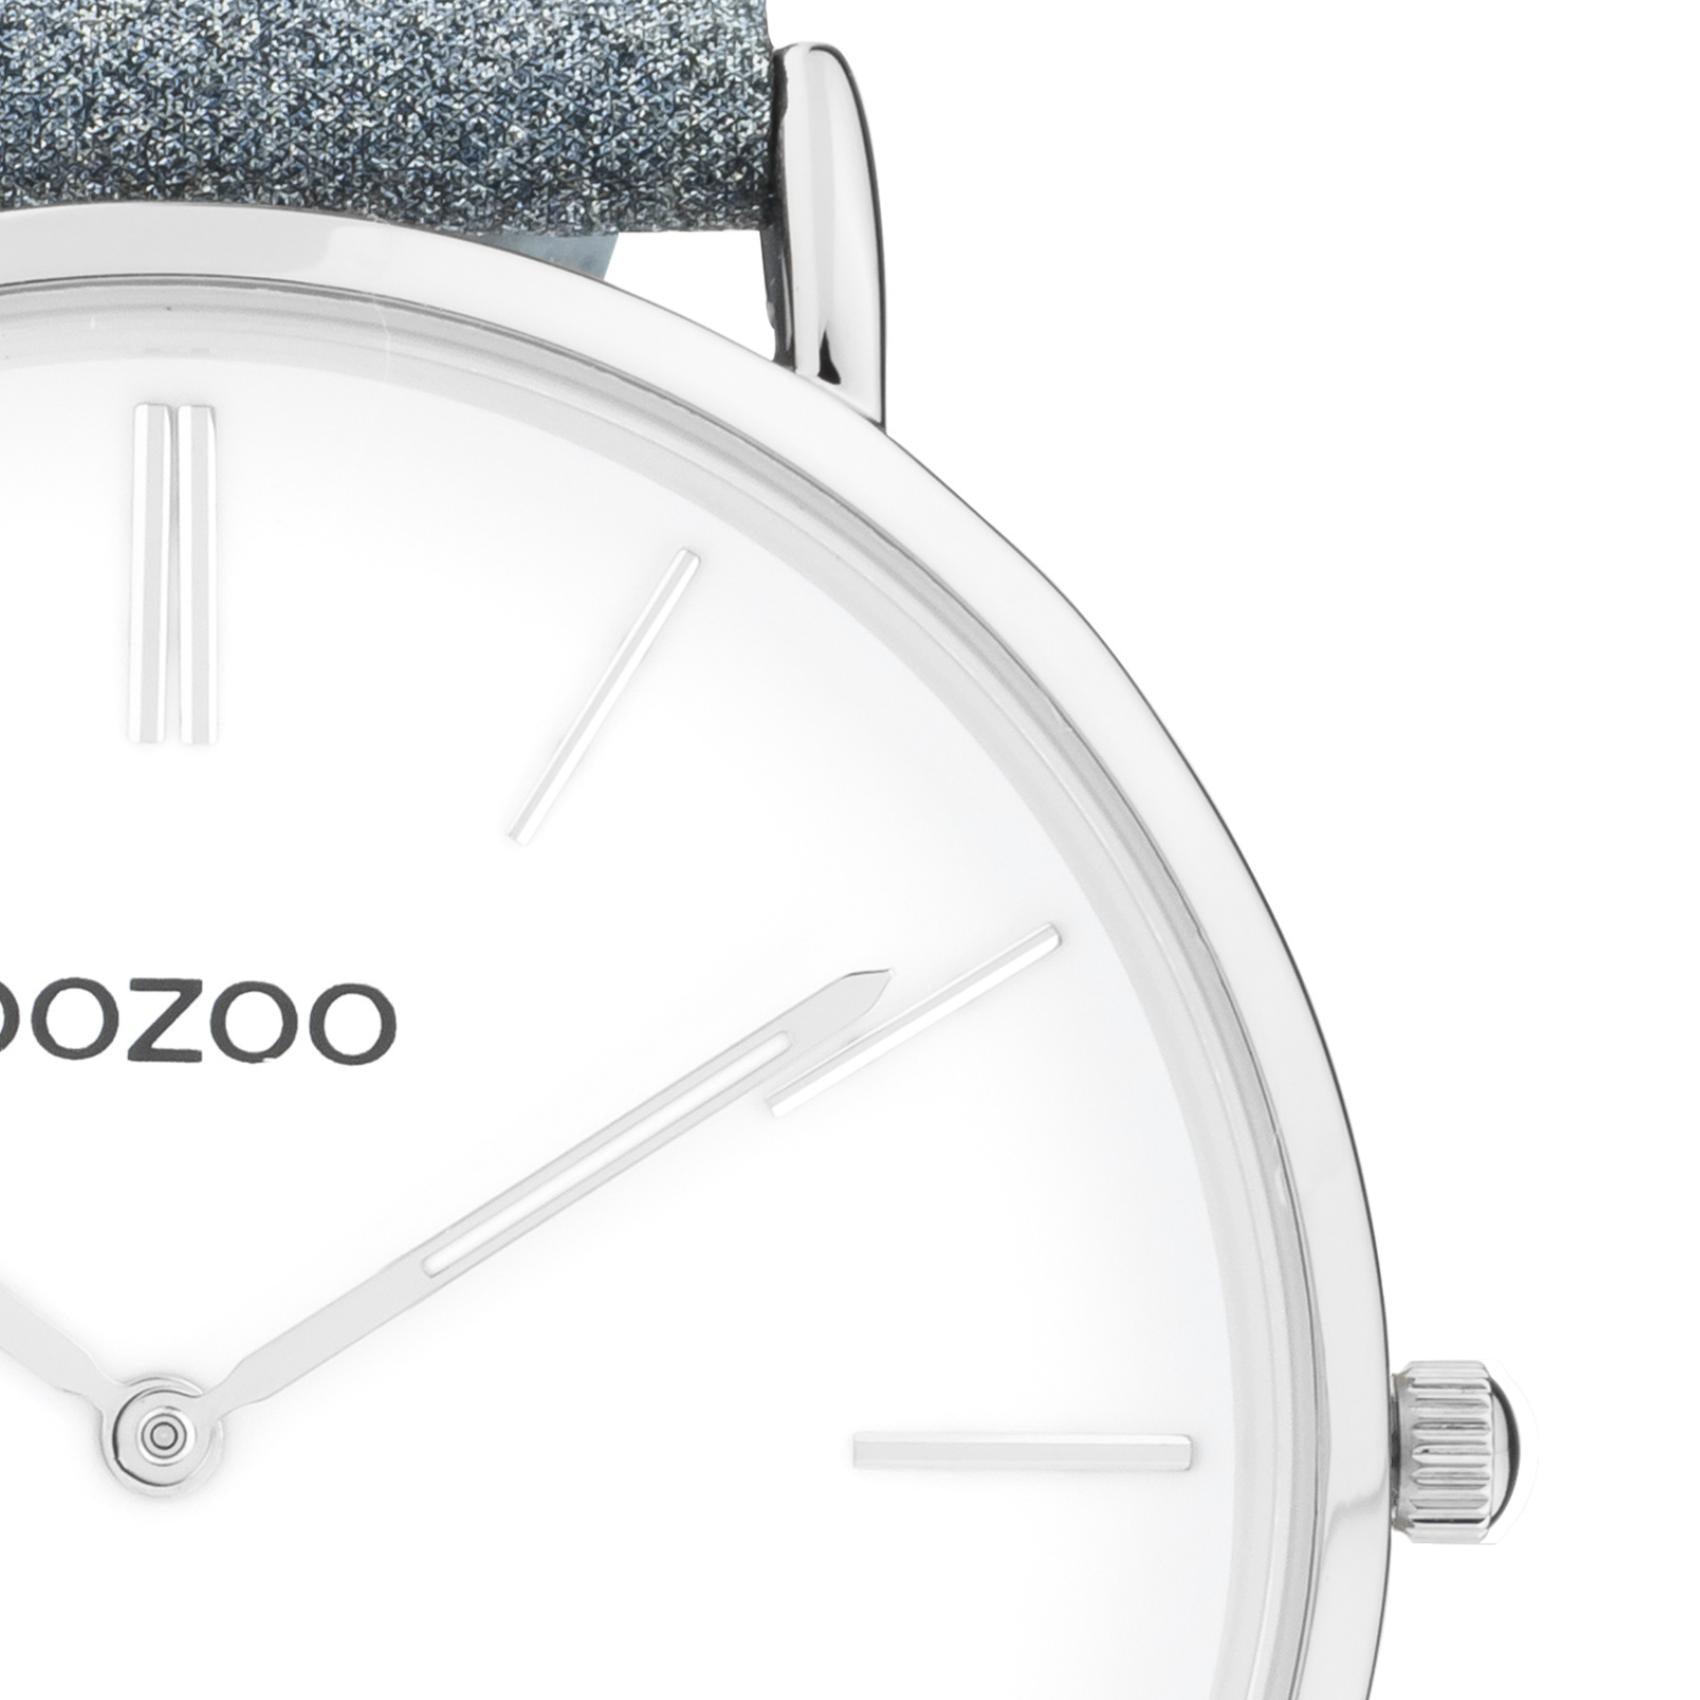 Στρογγυλό ρολόι Oozoo Vintage C20147 με μπλε δερμάτινο λουράκι,άσπρο καντράν διαμέτρου 43mm και μηχανισμό μπαταρίας quartz.